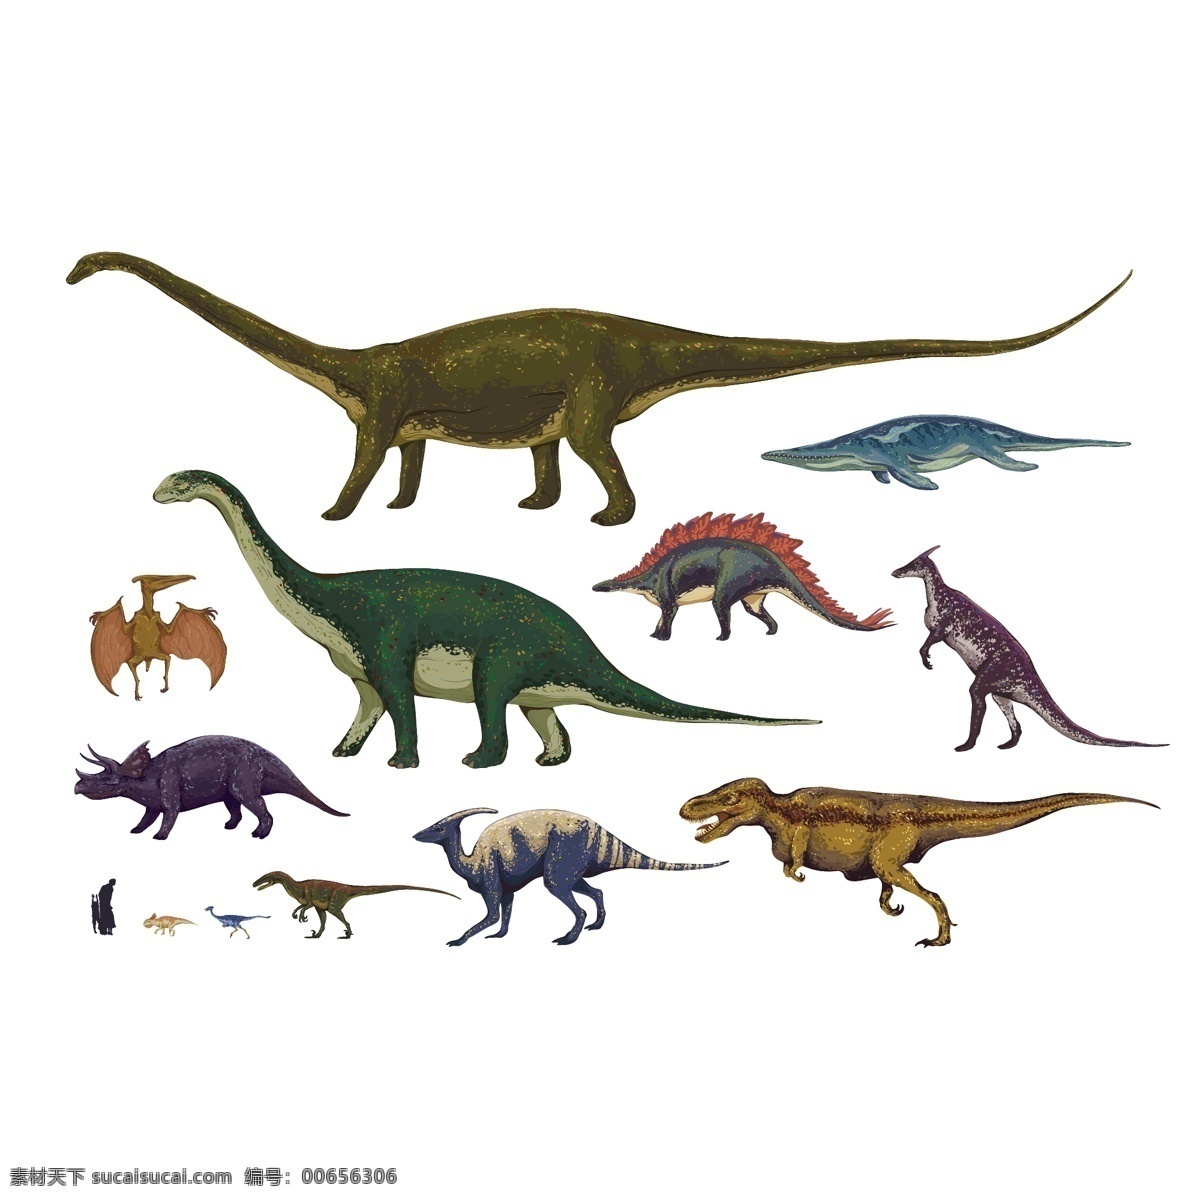 设计素材 恐龙世界 恐龙卡通形象 恐龙形象 剑龙 恐龙大全 恐龙王国 黑白恐龙 恐龙家族 翼龙 霸王龙 卡通恐龙 矢量恐龙 恐龙素材 各种恐龙 小恐龙 古代动物 远古动物 暴龙 迅猛龙 三角龙 特异龙 恐龙造型 喷火的恐龙 手绘恐龙 恐龙乐园 大连动物园 恐龙蛋 侏罗纪 白垩纪 侏罗纪时代 生物世界 野生动物